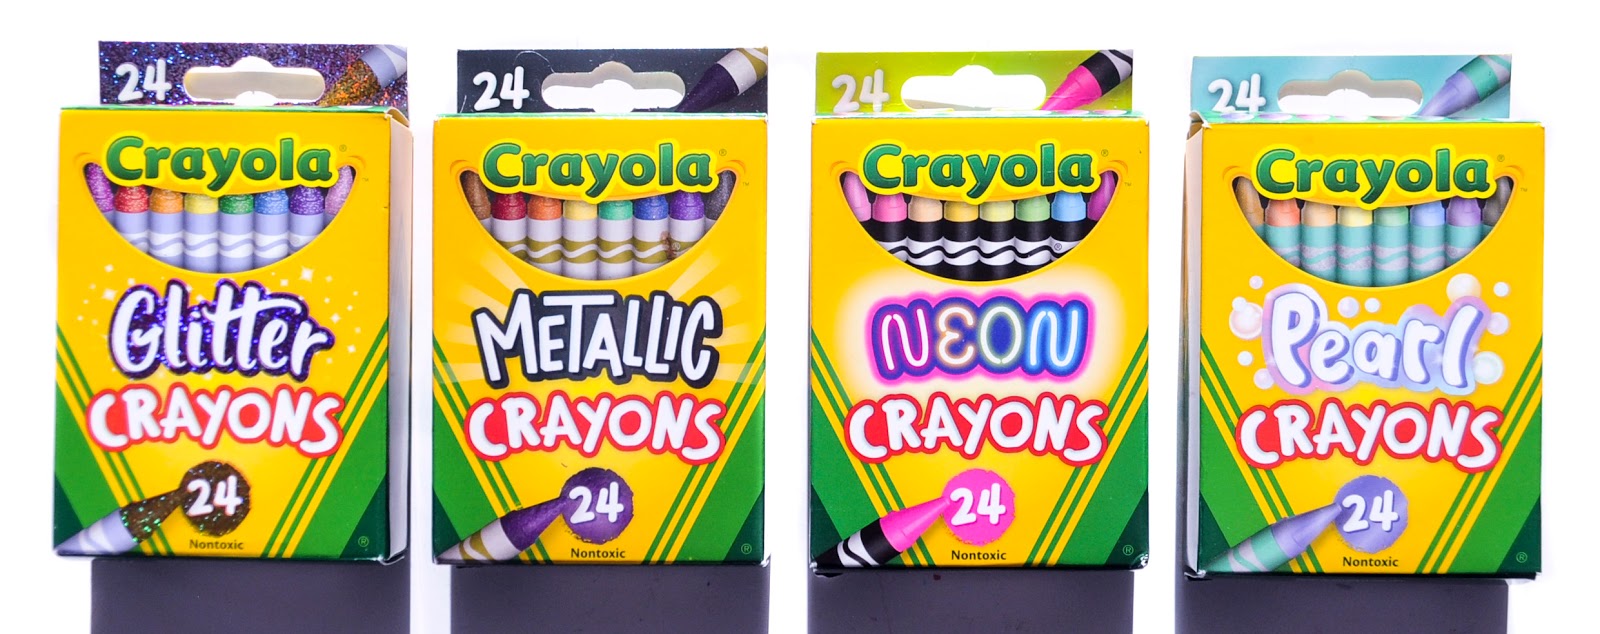 REVIEW] Crayola Metallic FX crayons 